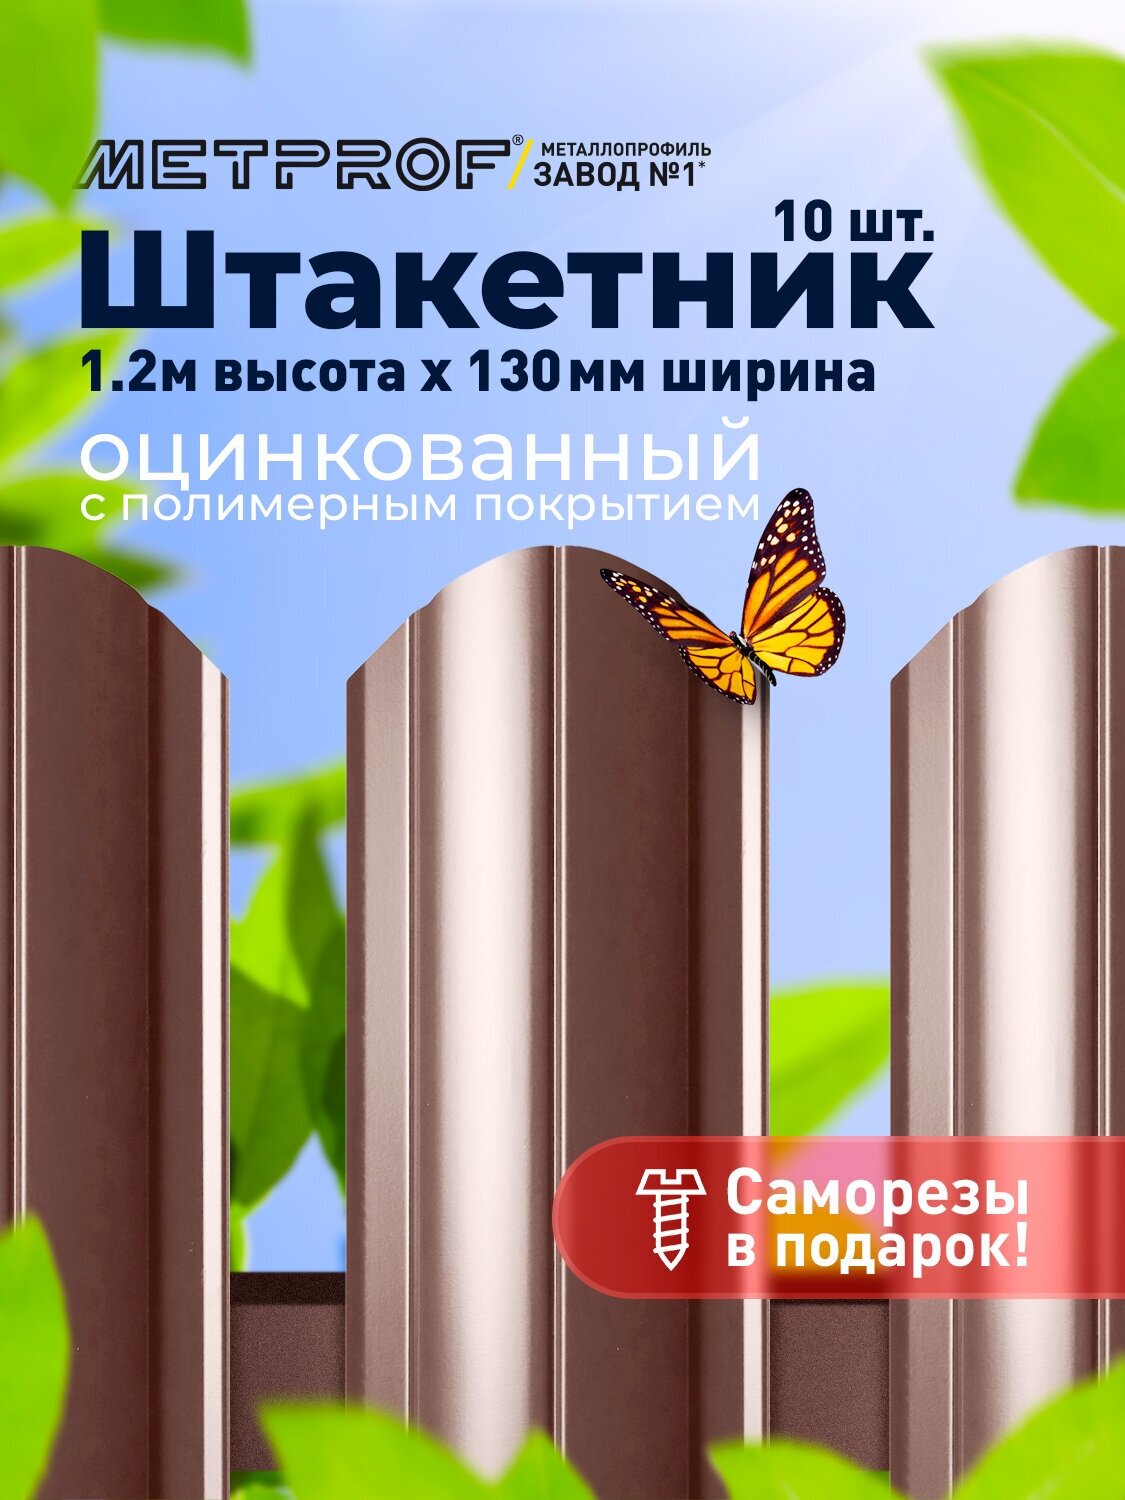 Евроштакетник Line металлический/ заборы/ 0.45 толщина, цвет 8017/ 8017 (Шоколад) 10 шт. 1.2м